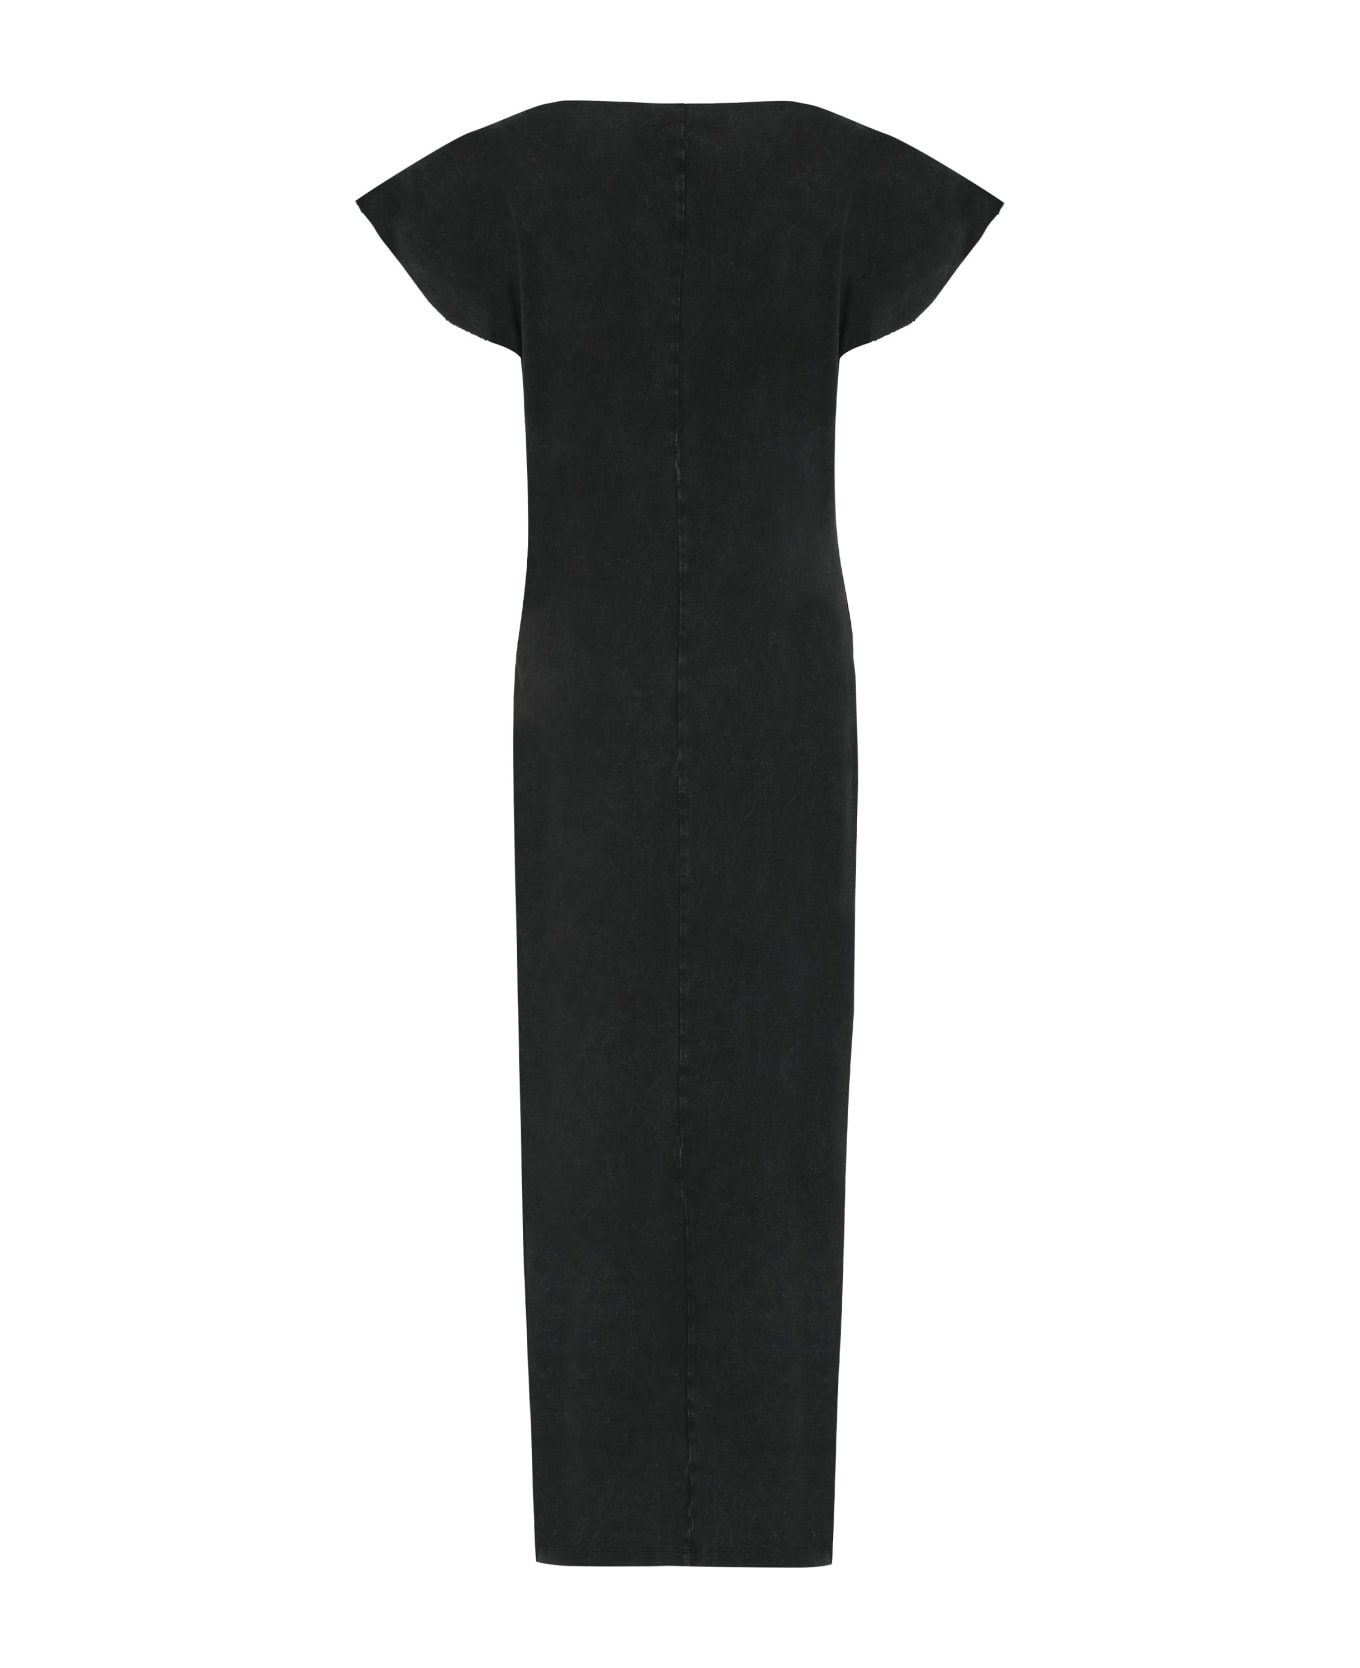 Isabel Marant Nadela Printed Cotton Dress - black